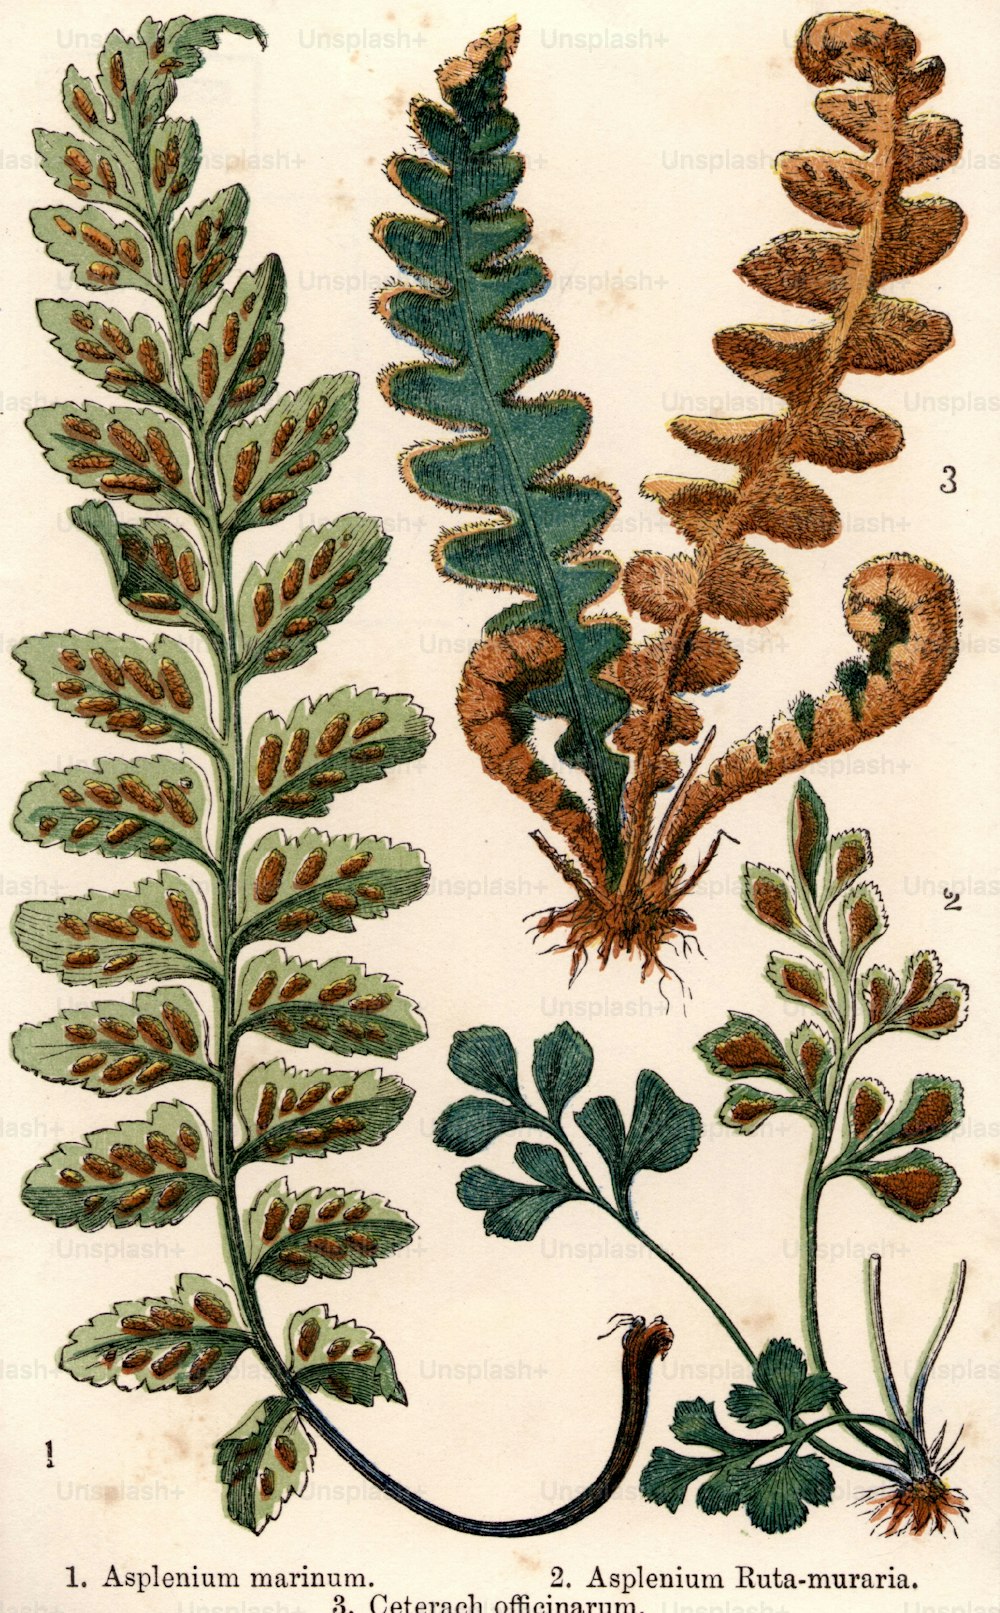 1800年頃:Aspleium marinum、asplenium ruta-muraria、Ceterach officinarumの3種のシダ。 (写真提供:Hulton Archive/Getty Images)